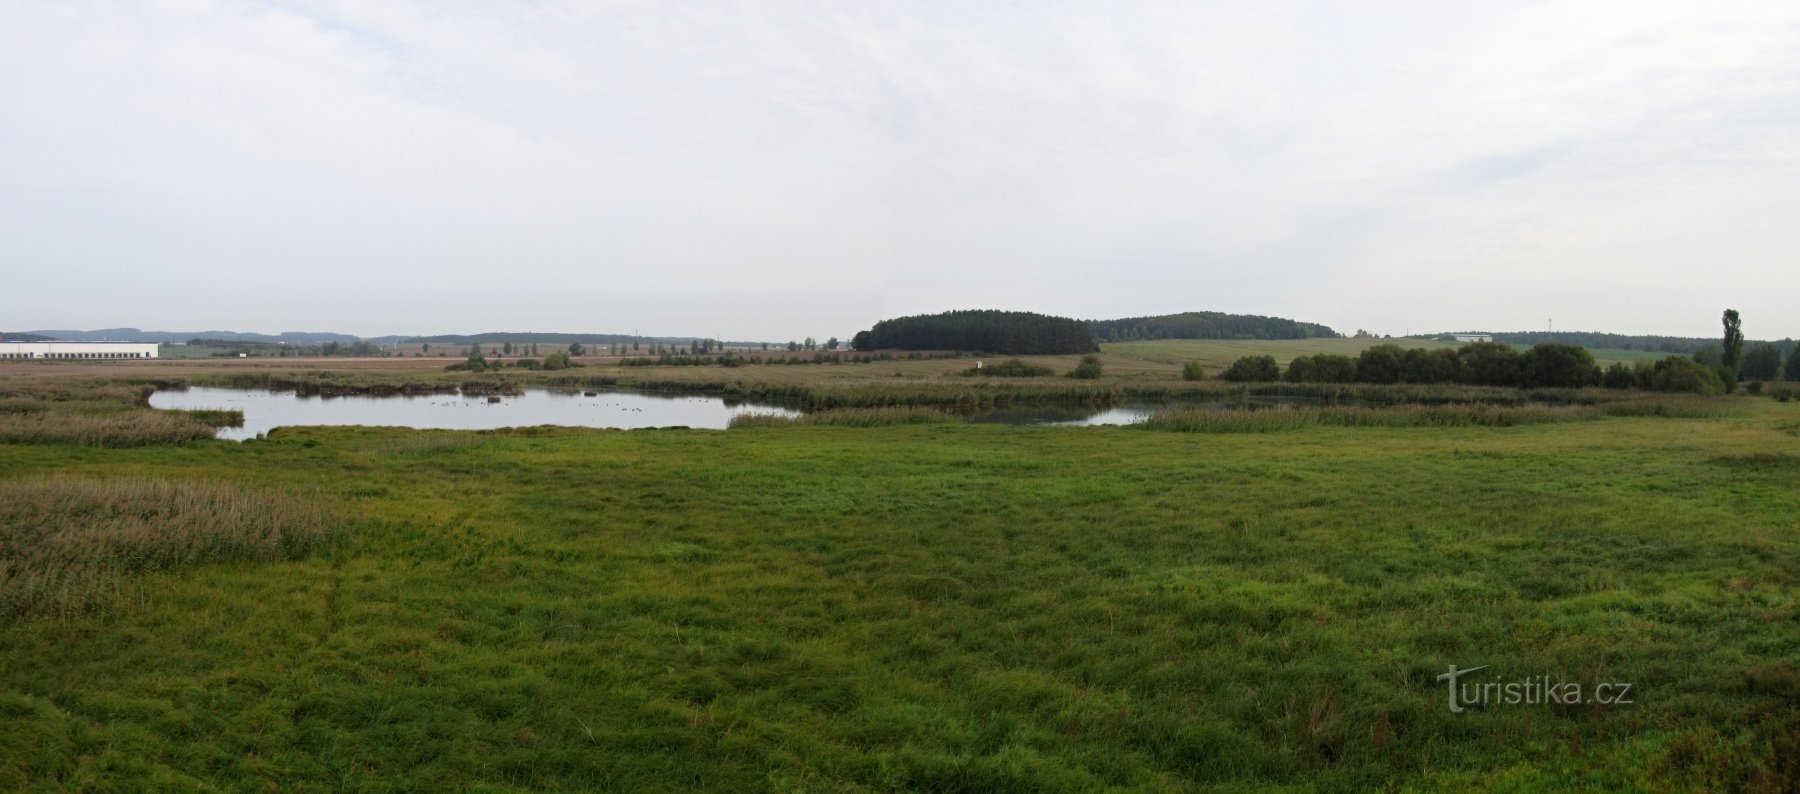 Nový Rybník (Úherce) - nature reserve and bird observatory